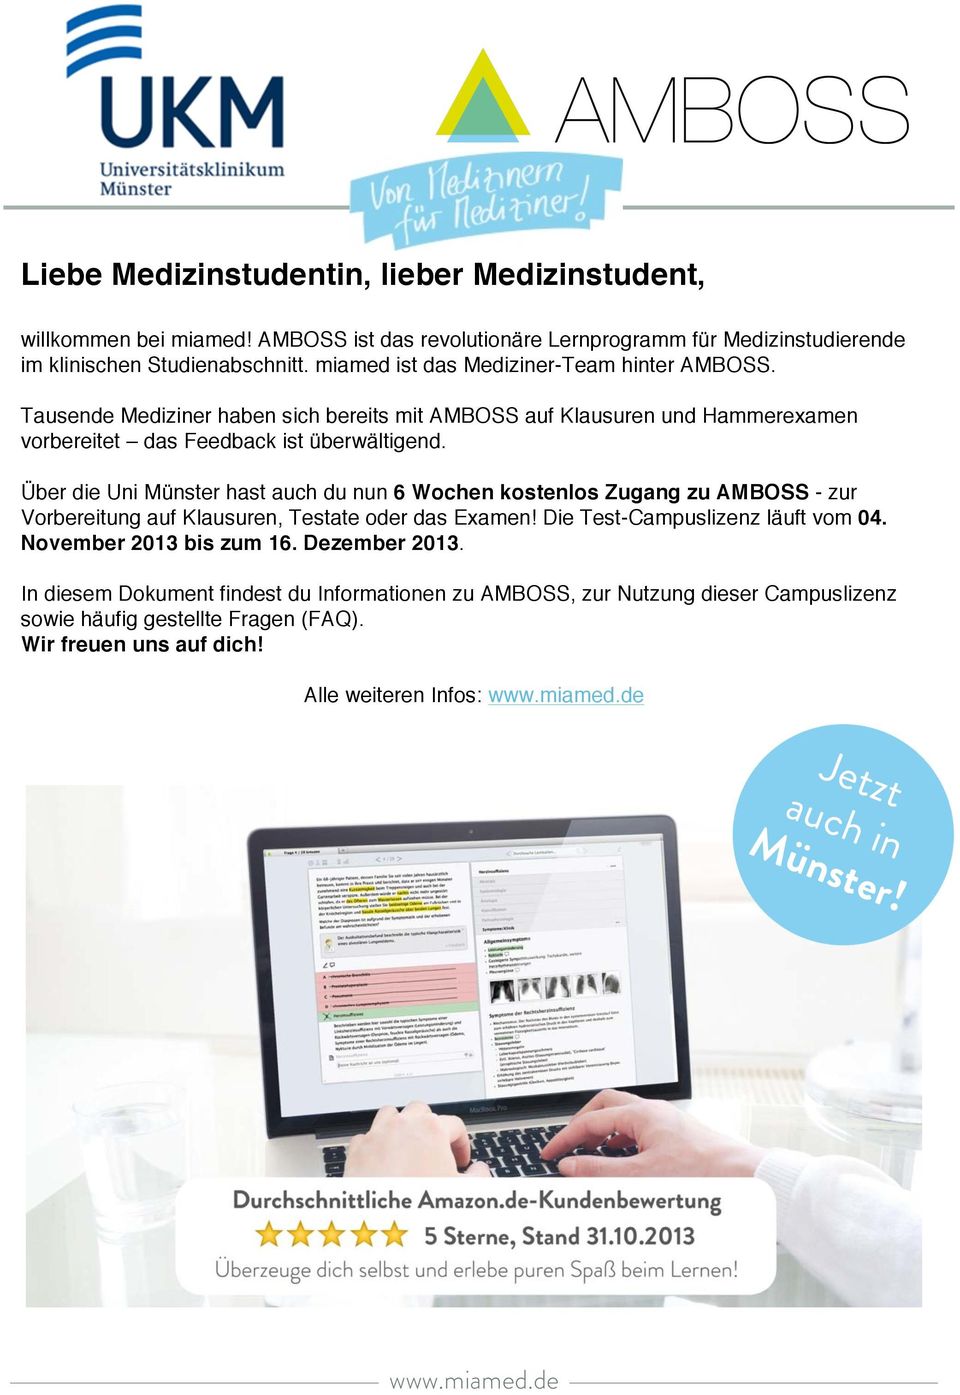 Über die Uni Münster hast auch du nun 6 Wochen kostenlos Zugang zu AMBOSS - zur Vorbereitung auf Klausuren, Testate oder das Examen! Die Test-Campuslizenz läuft vom 04.